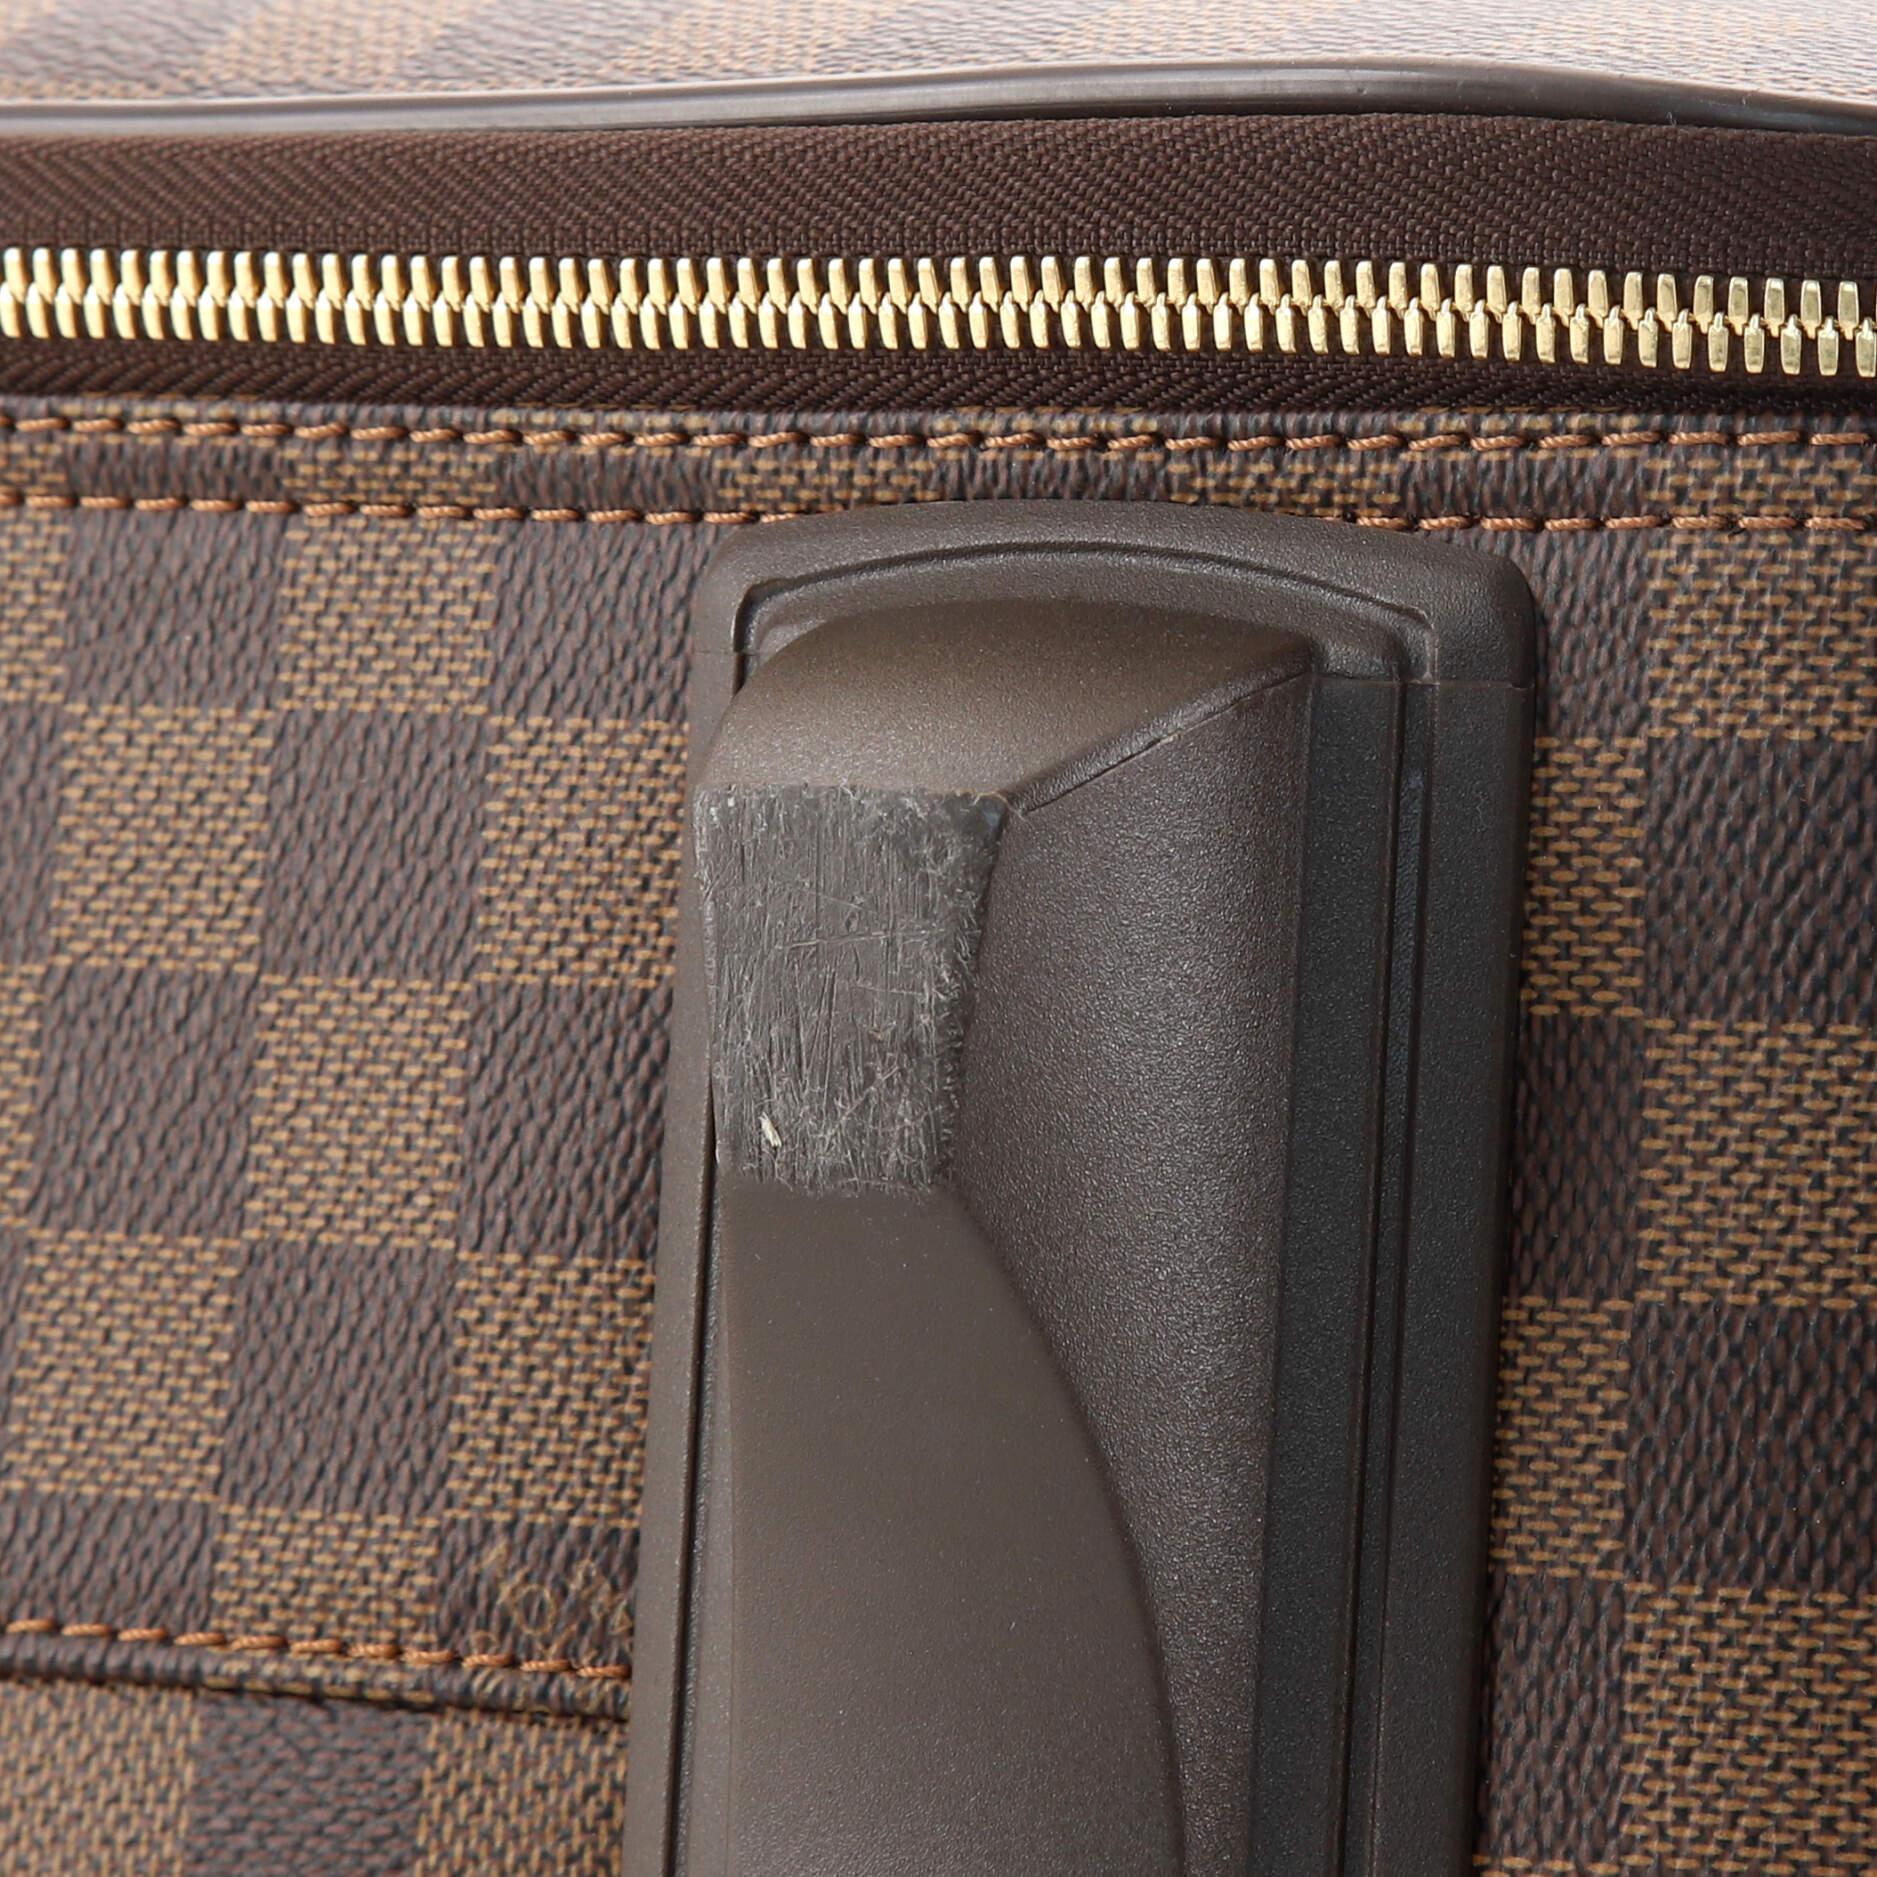 Brown Louis Vuitton Pegase Luggage Damier 55